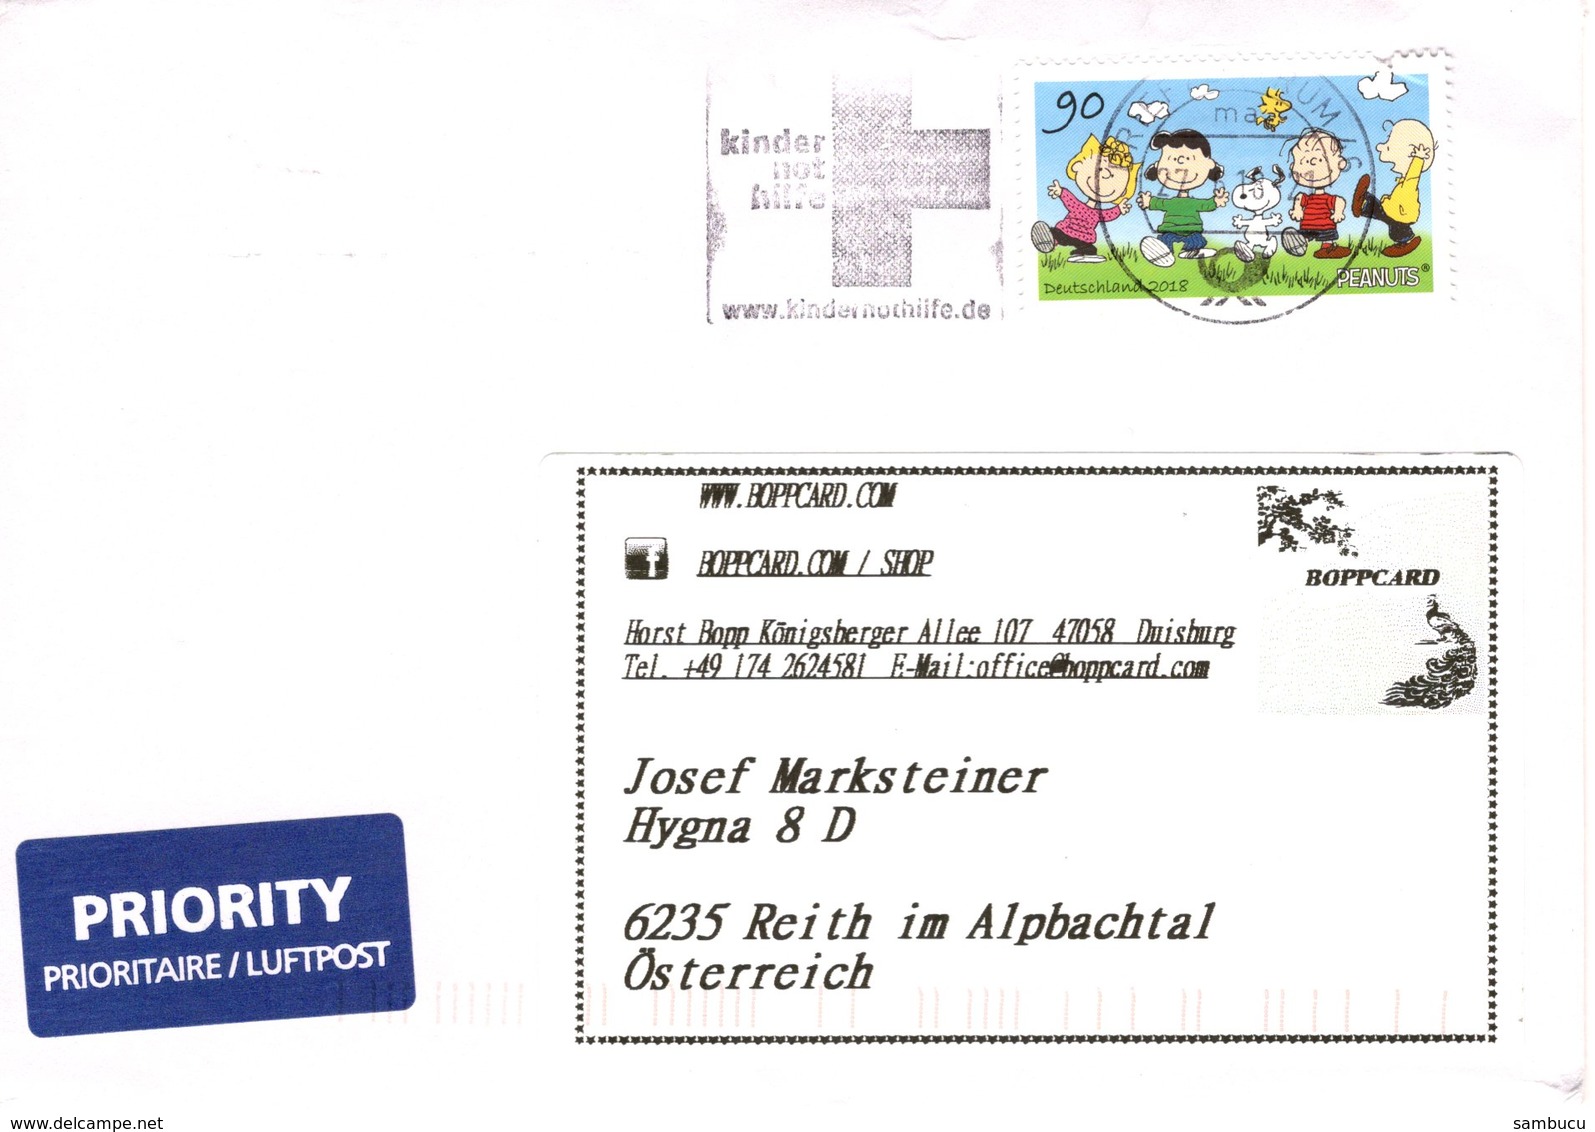 Auslands - Brief Von Briefzentrum 46 Mit 90 Cent Peanuts + Werbestempel Kindernothilfe 2018 - Briefe U. Dokumente